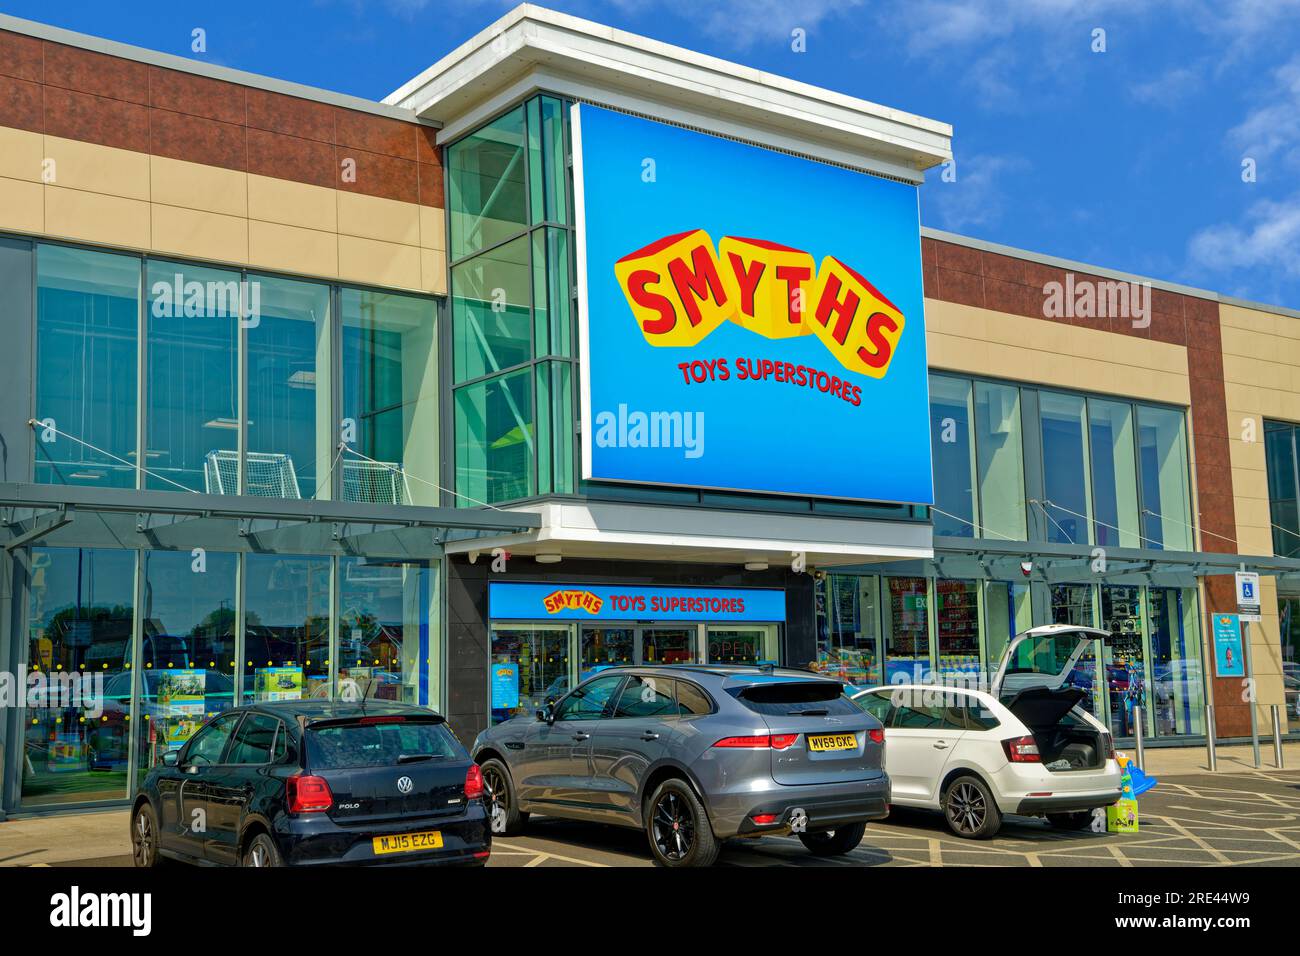 Magasin de jouets Smyths à Warrington Retail Park, Cheshire, Angleterre. Banque D'Images